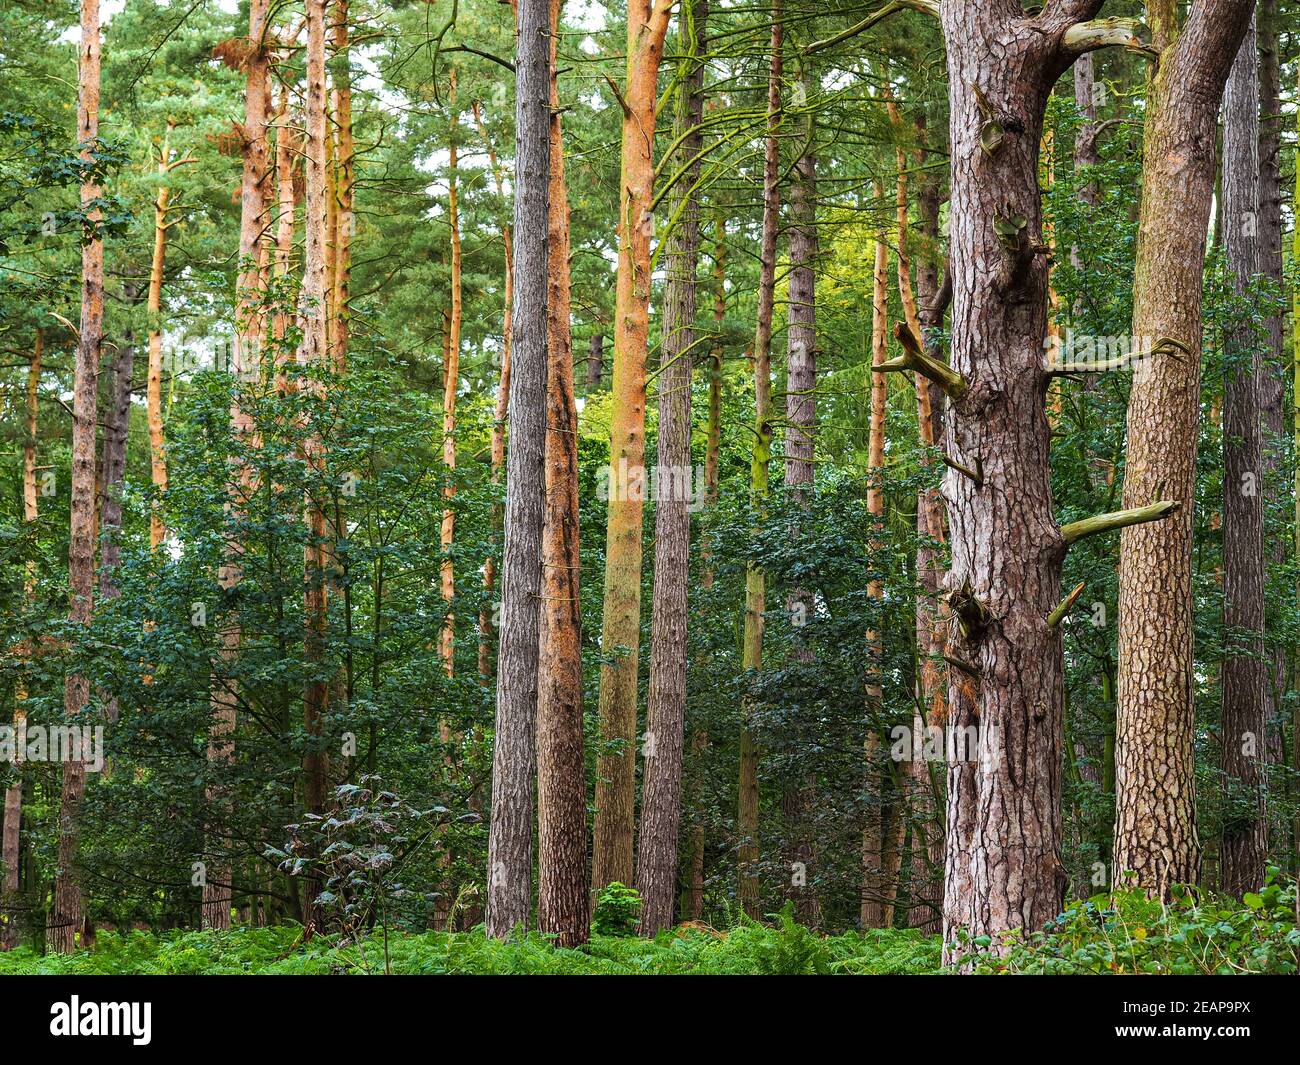 Herbstsonne in einem Wald mit hohen Baumstämmen Stockfoto